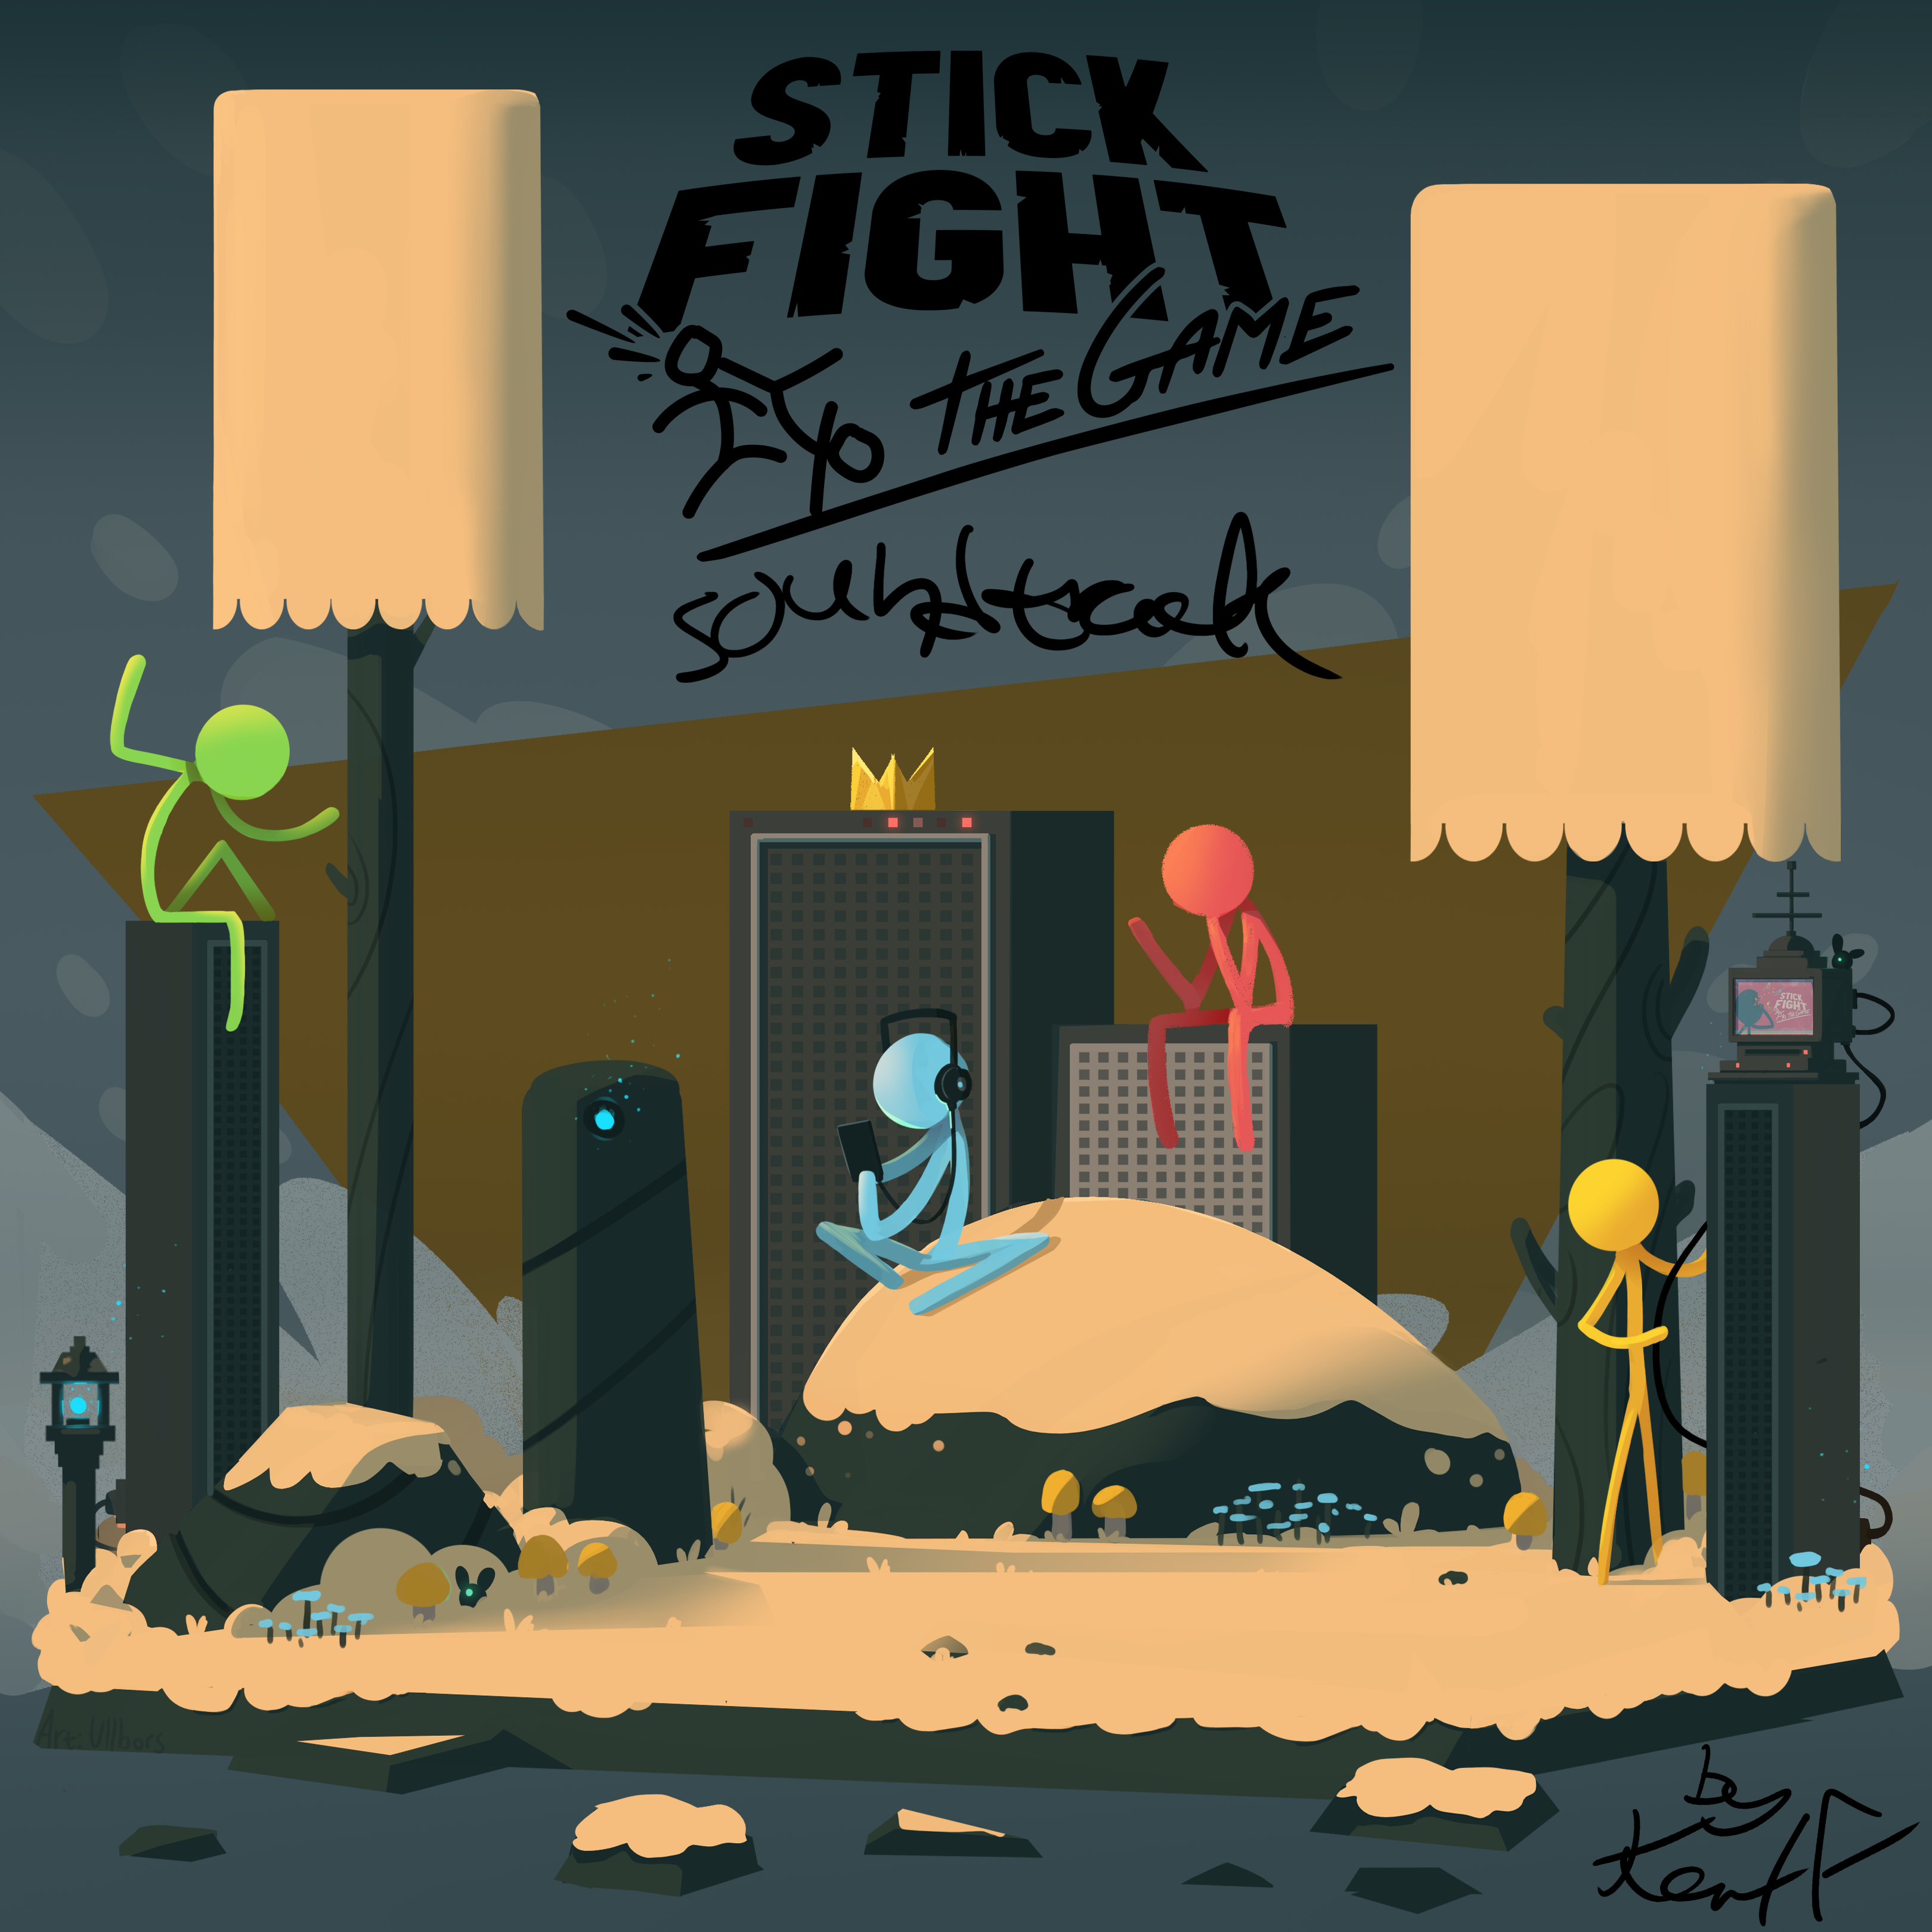 Stick Fight Game Soundtrack MP3 Stick Fight Game Soundtrack Soundtracks for FREE!